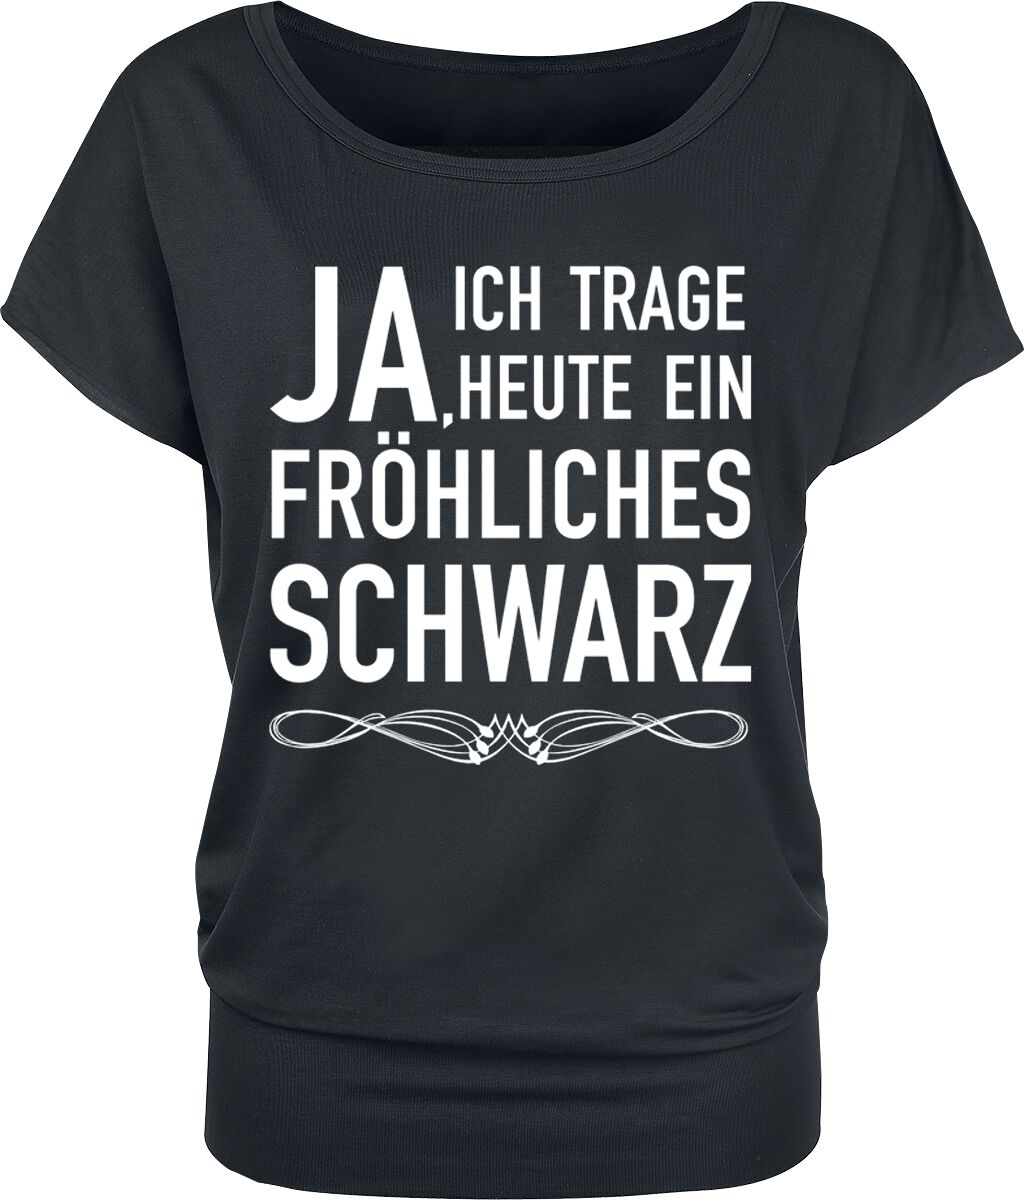 Sprüche T-Shirt - Fröhliches schwarz - XS bis 4XL - für Damen - Größe S - schwarz